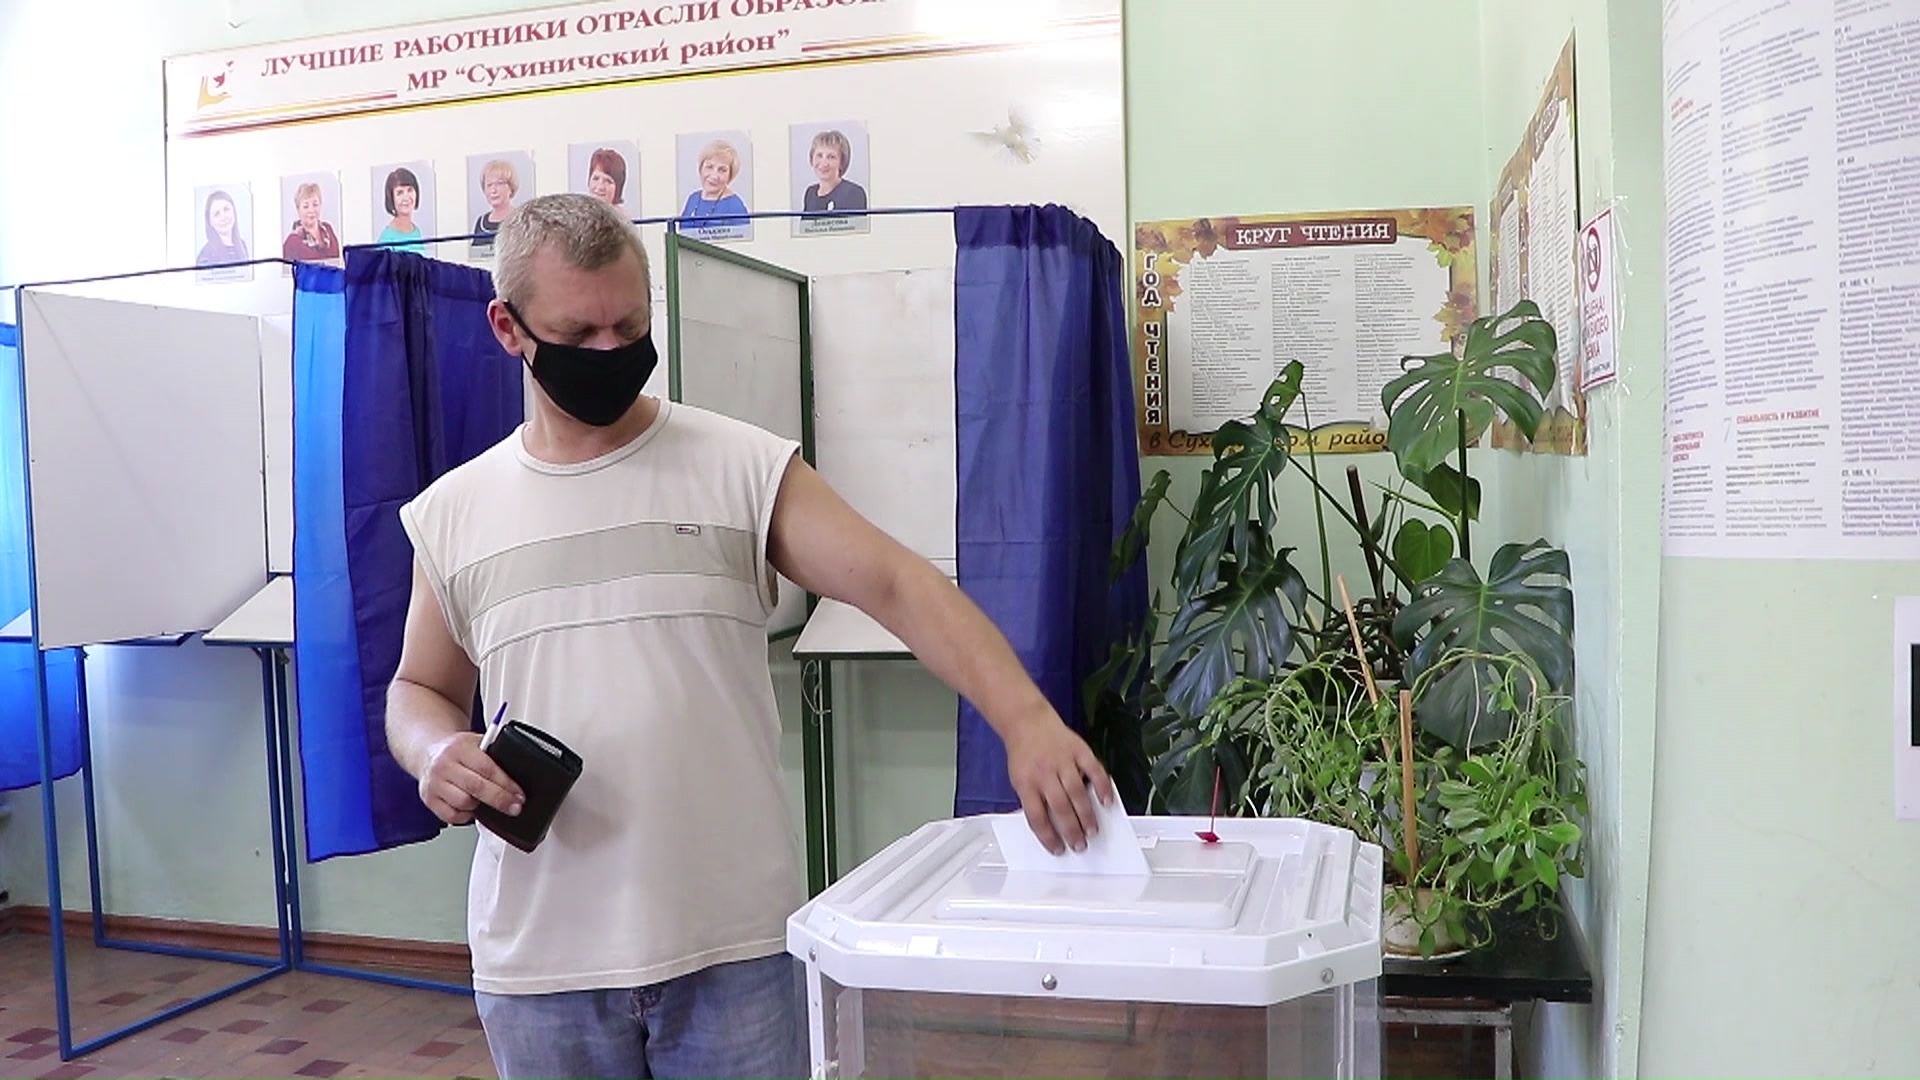 Явка населения. Выездной участок для голосования. Люди на избирательном участке фото. Избирательный участок Сухиничи на автозаводе.